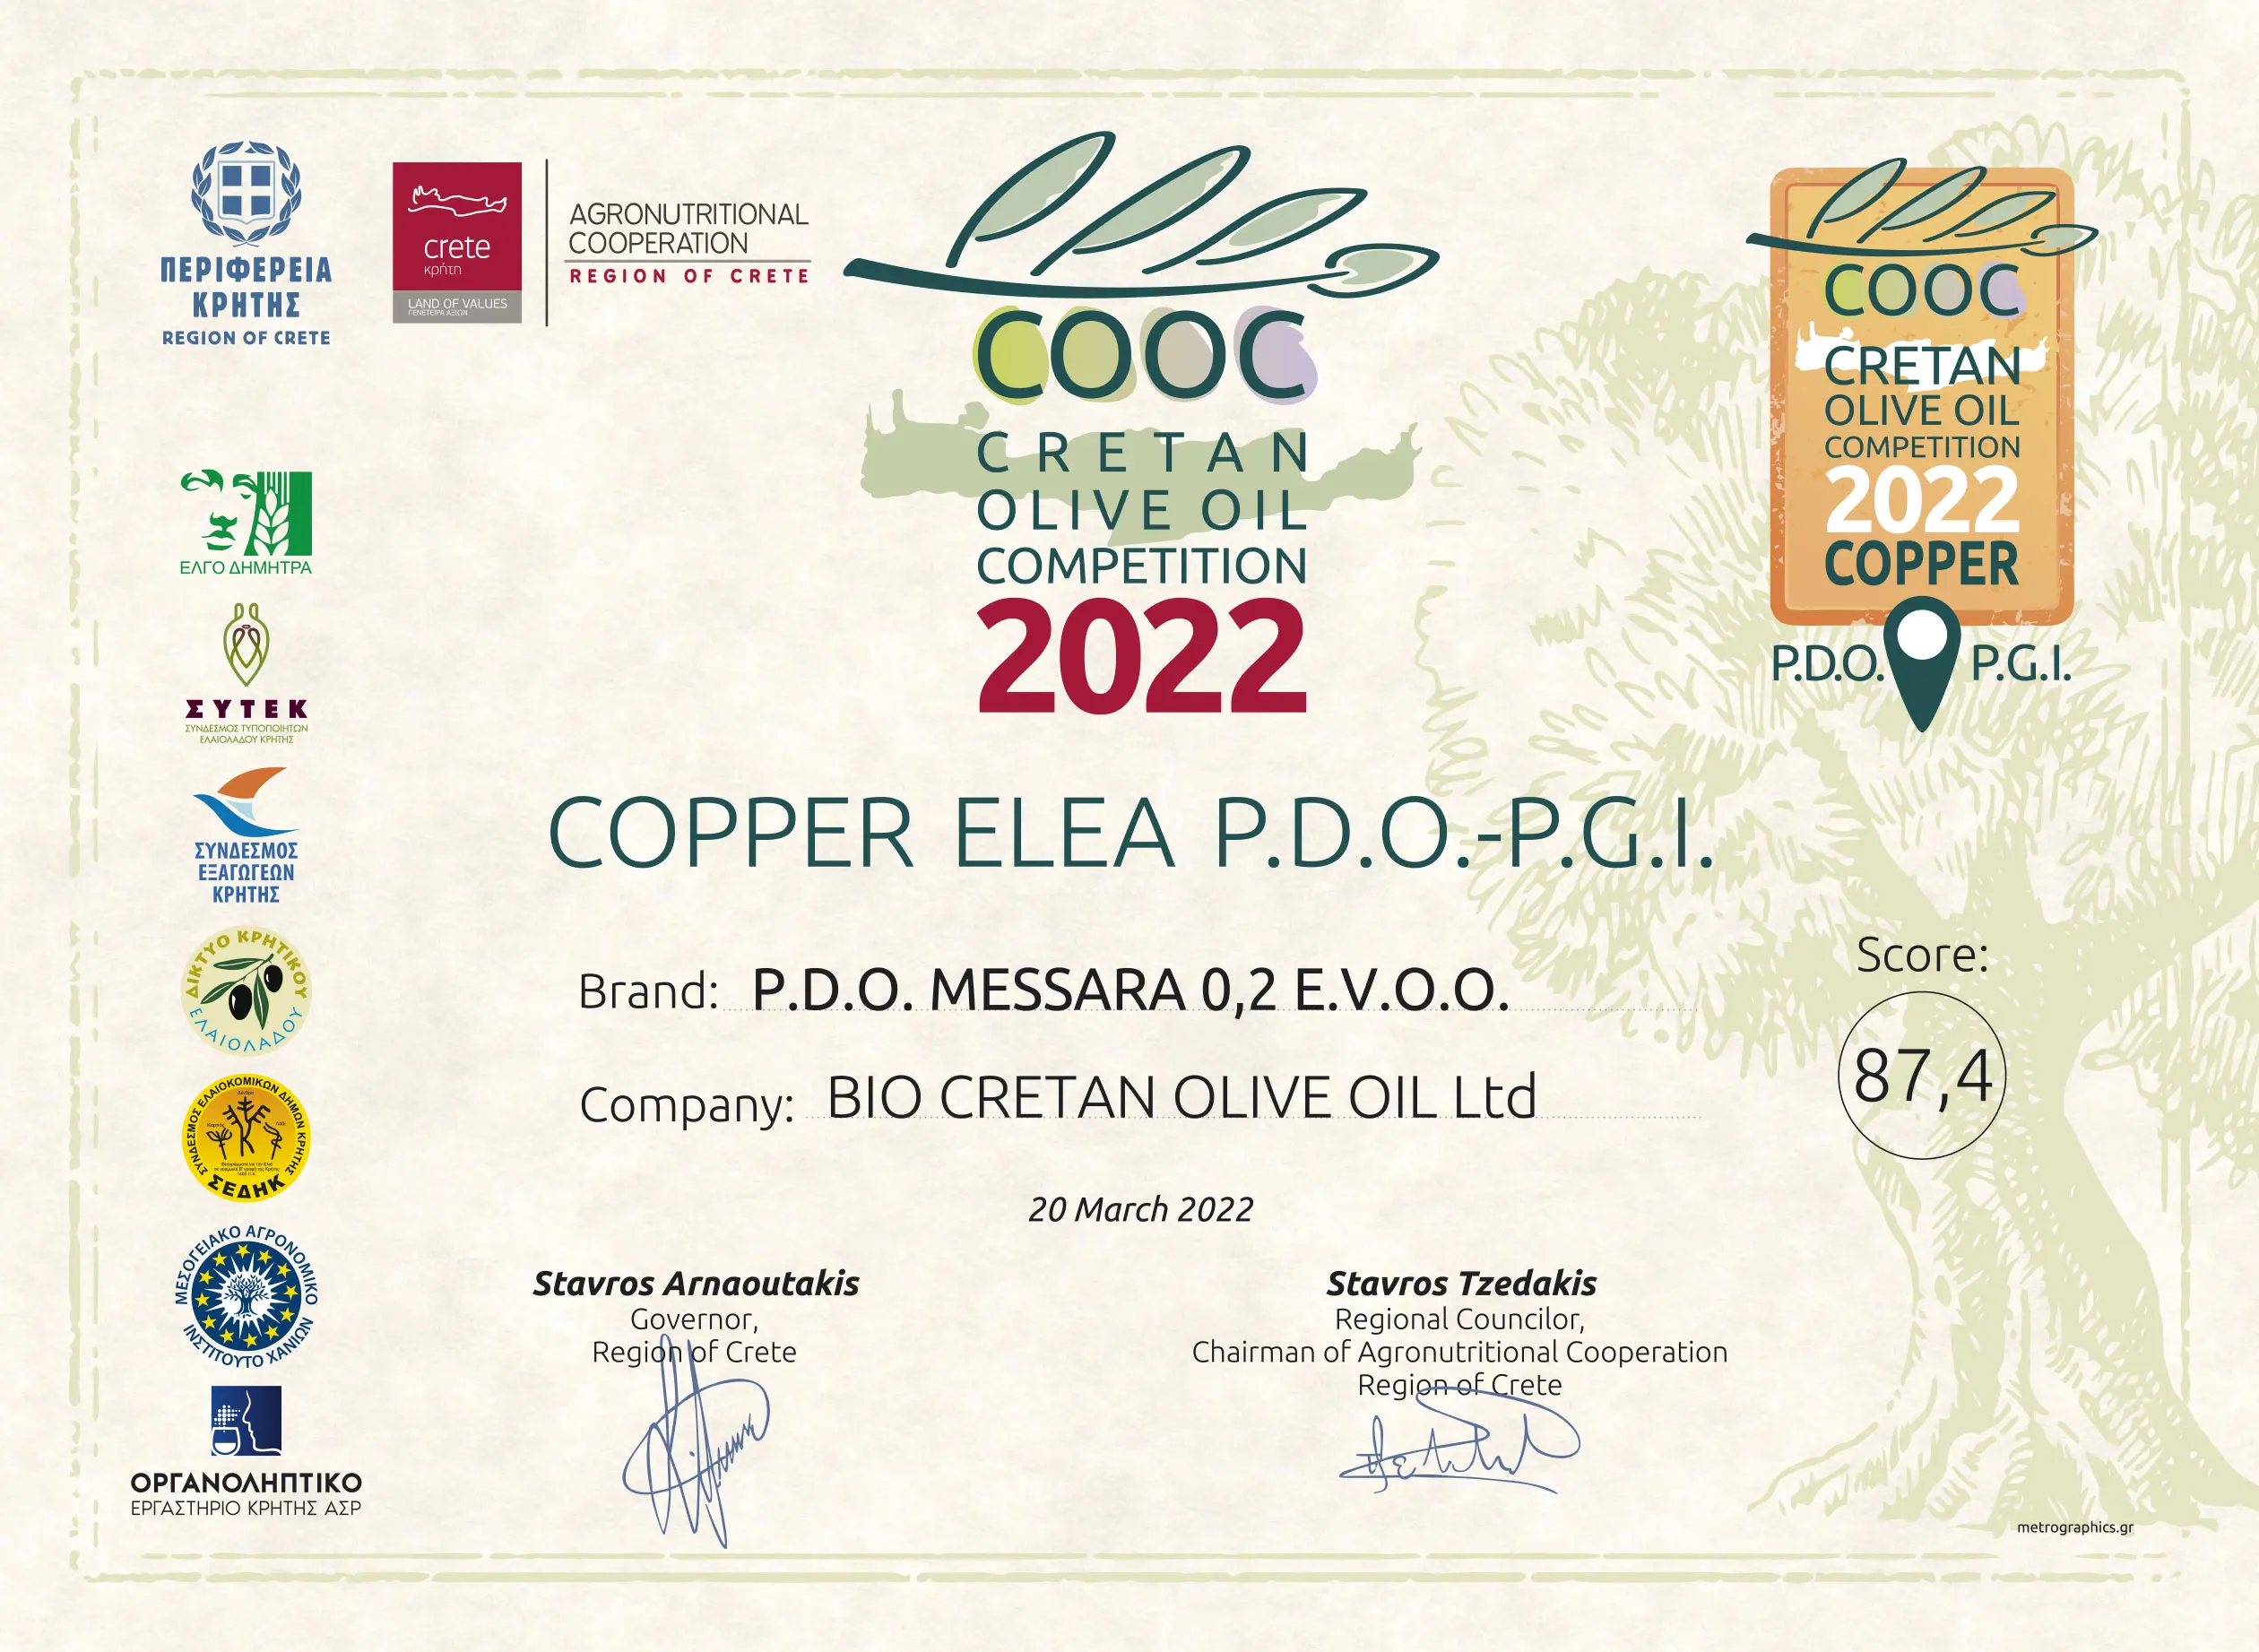 COOC - Wettbewerb für kretisches Olivenöl